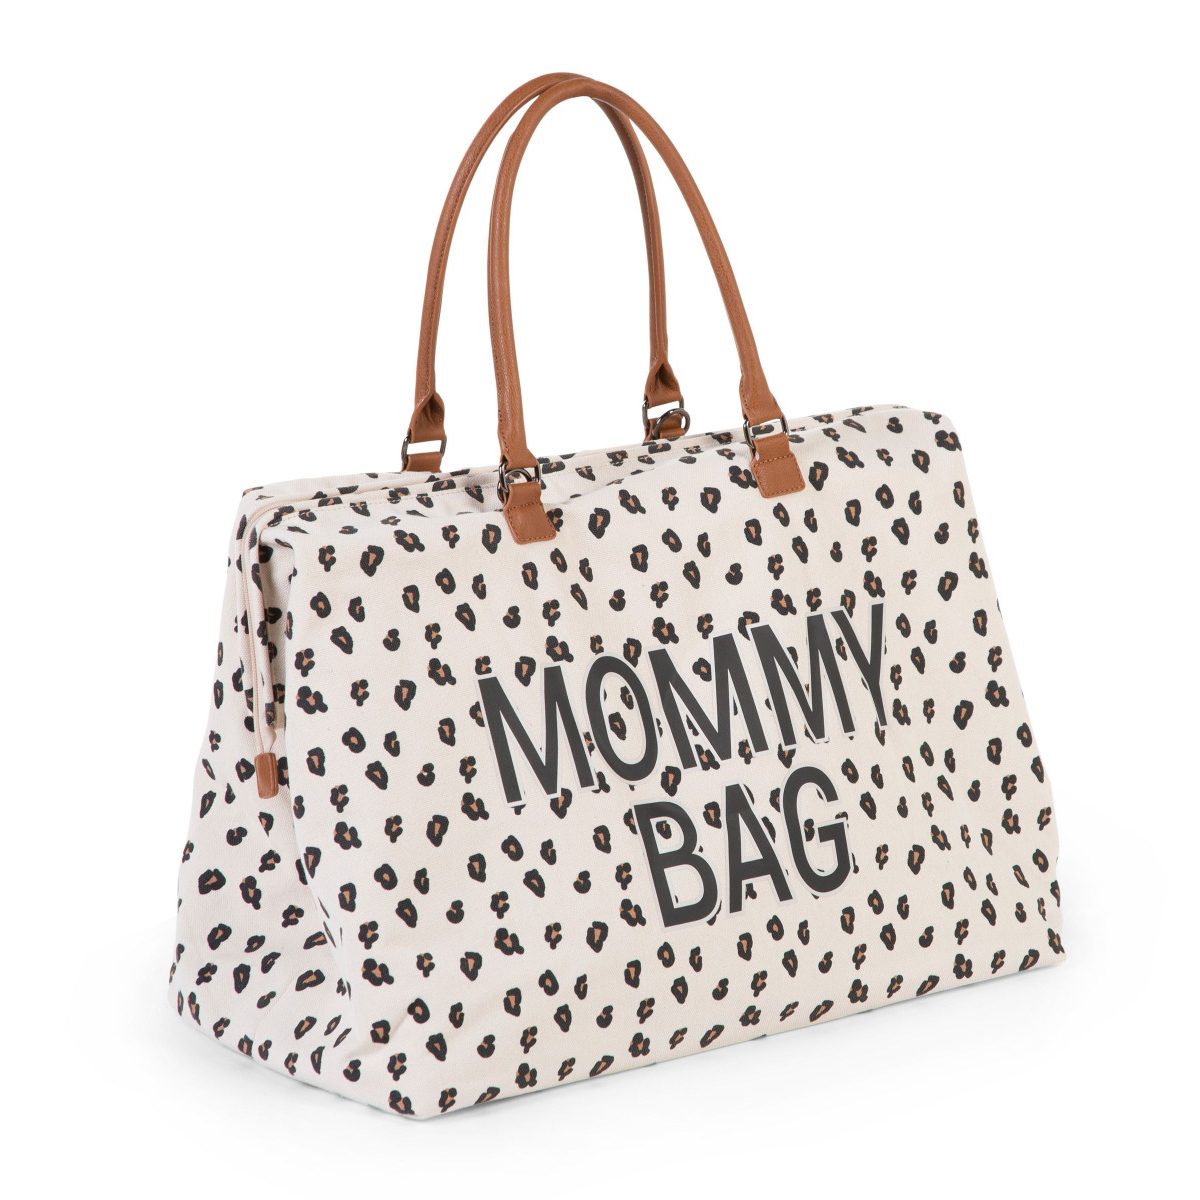 Childhome Mommy Bag Verzorgingstas - Leopard